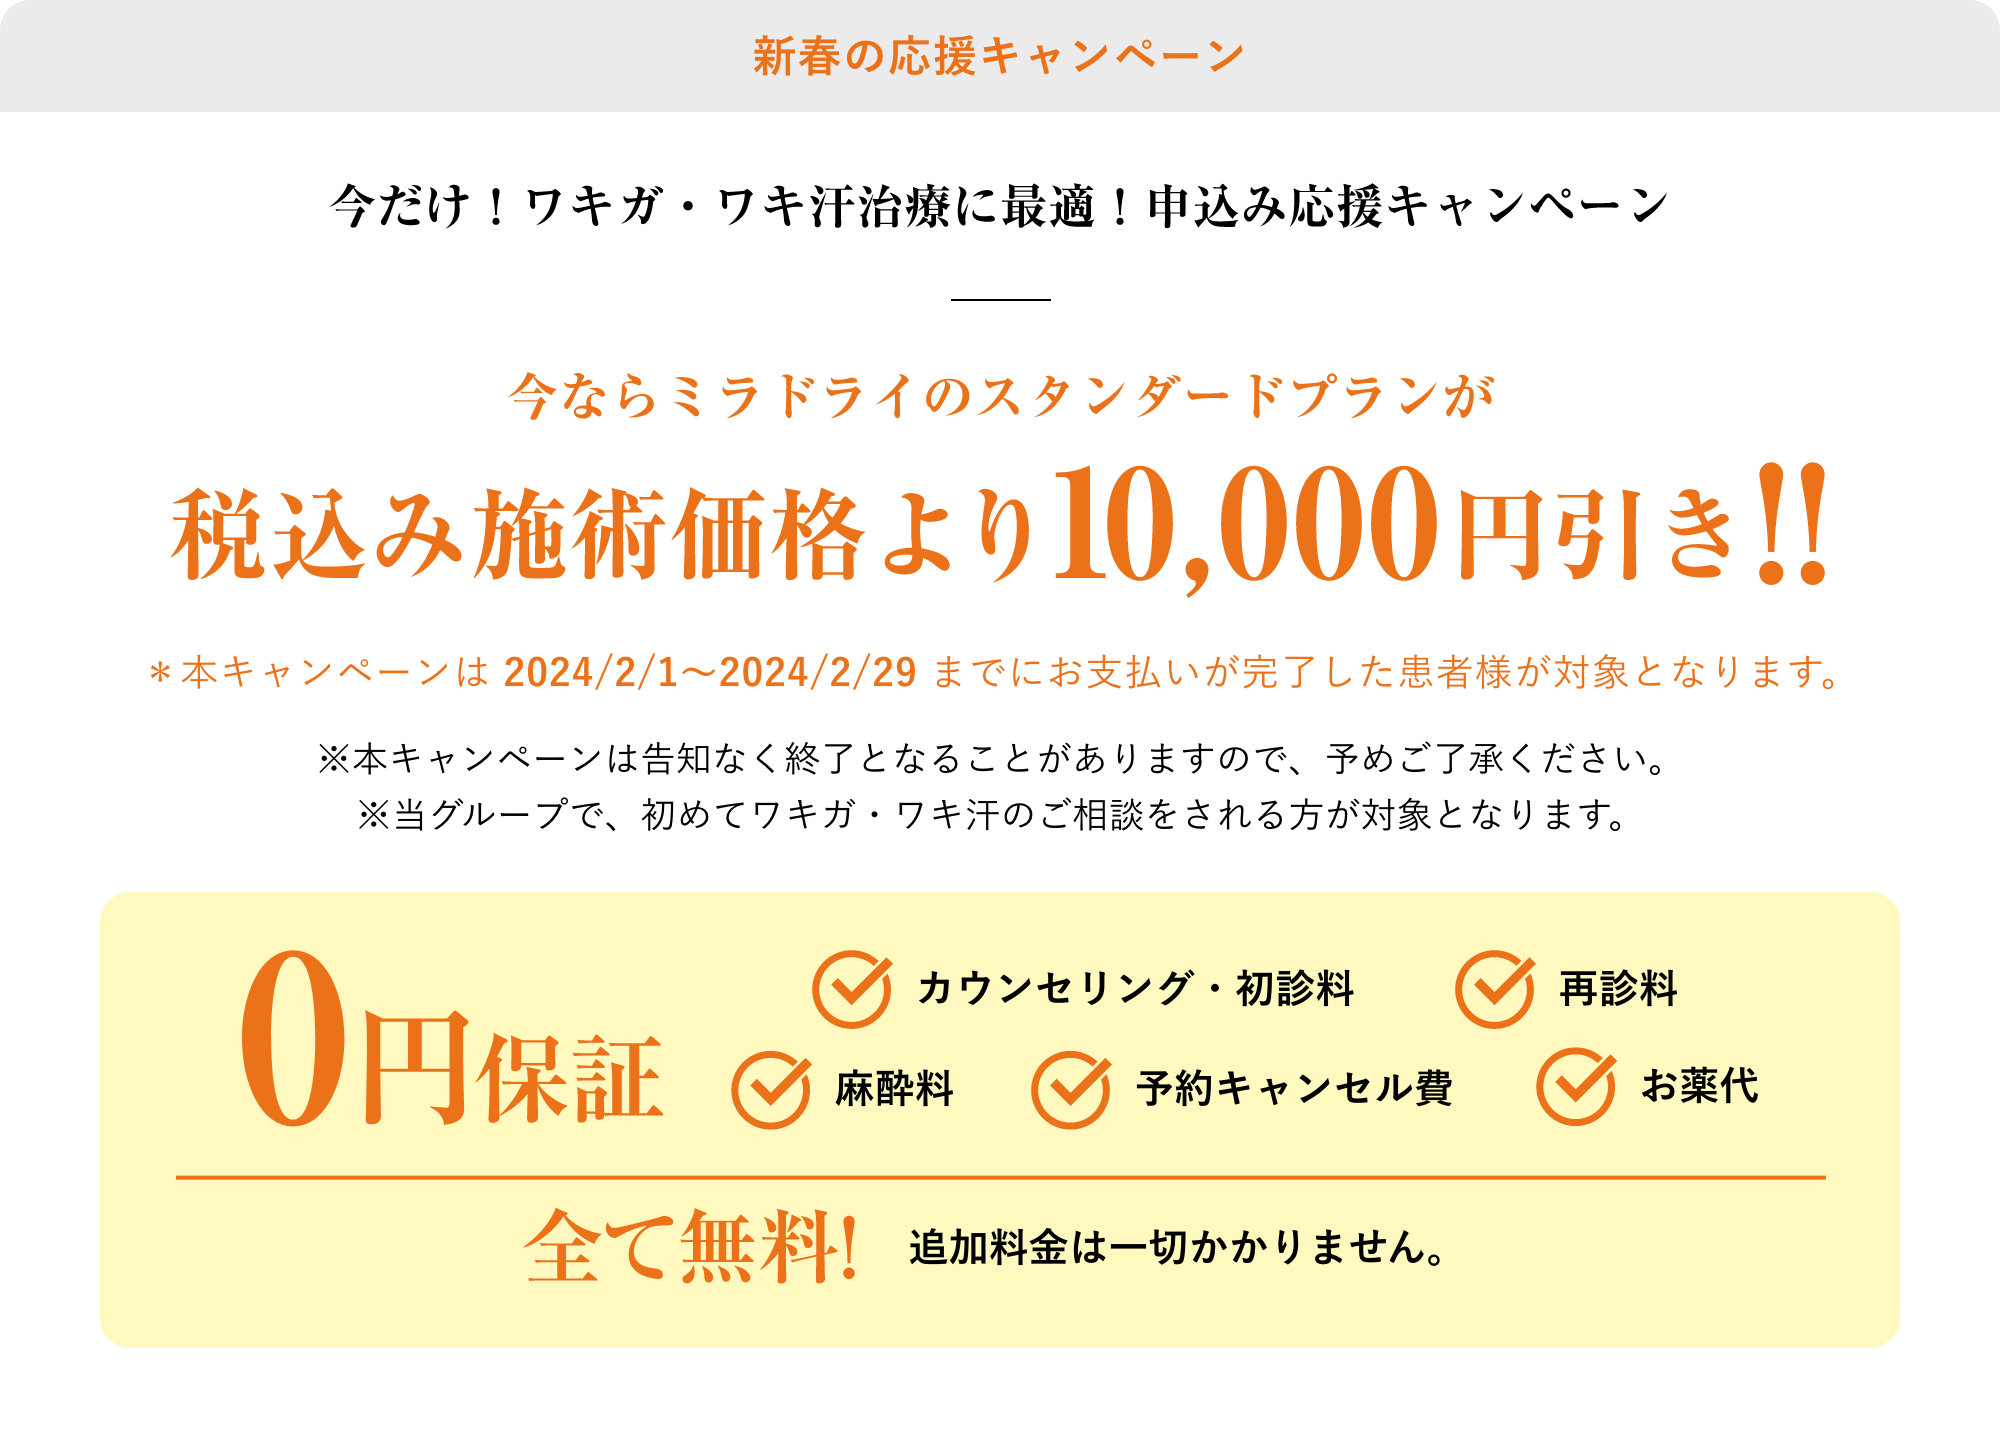 新春の応援キャンペーン税込み施術価格より10,000円引き!